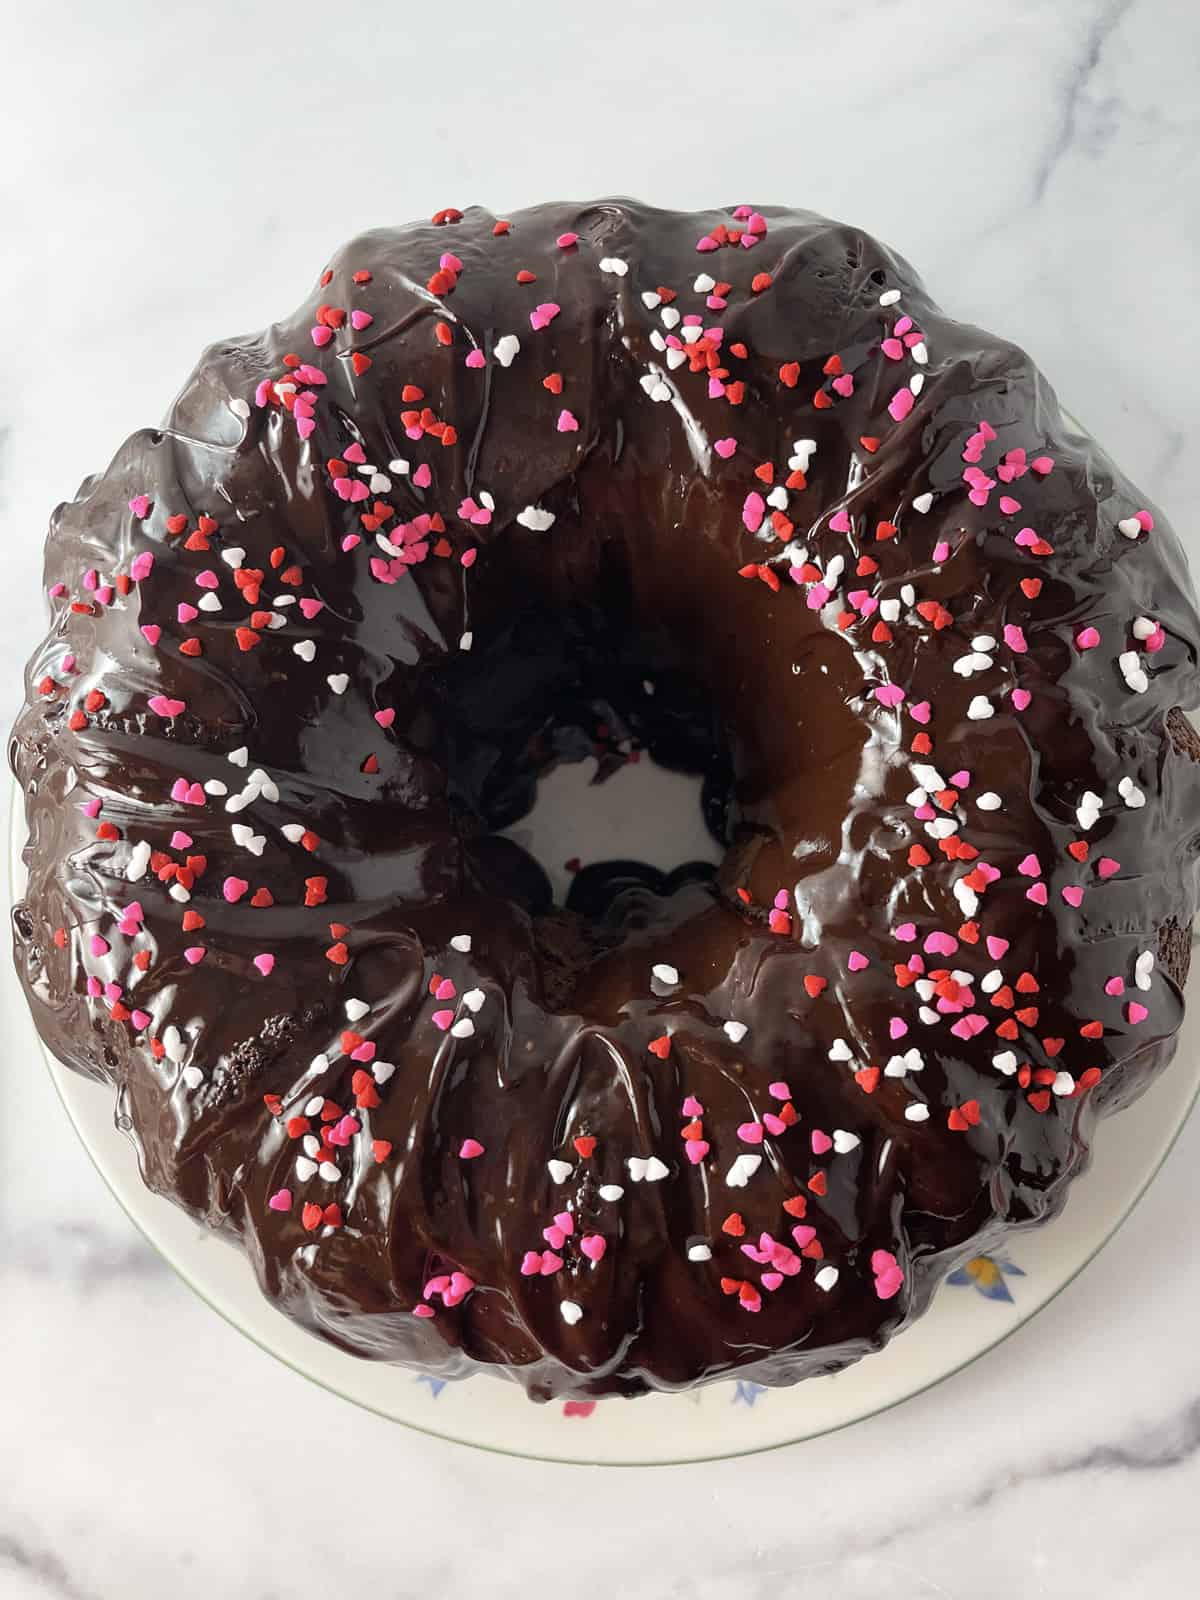 Chocolate glazed Bundt cake with sprinkles.